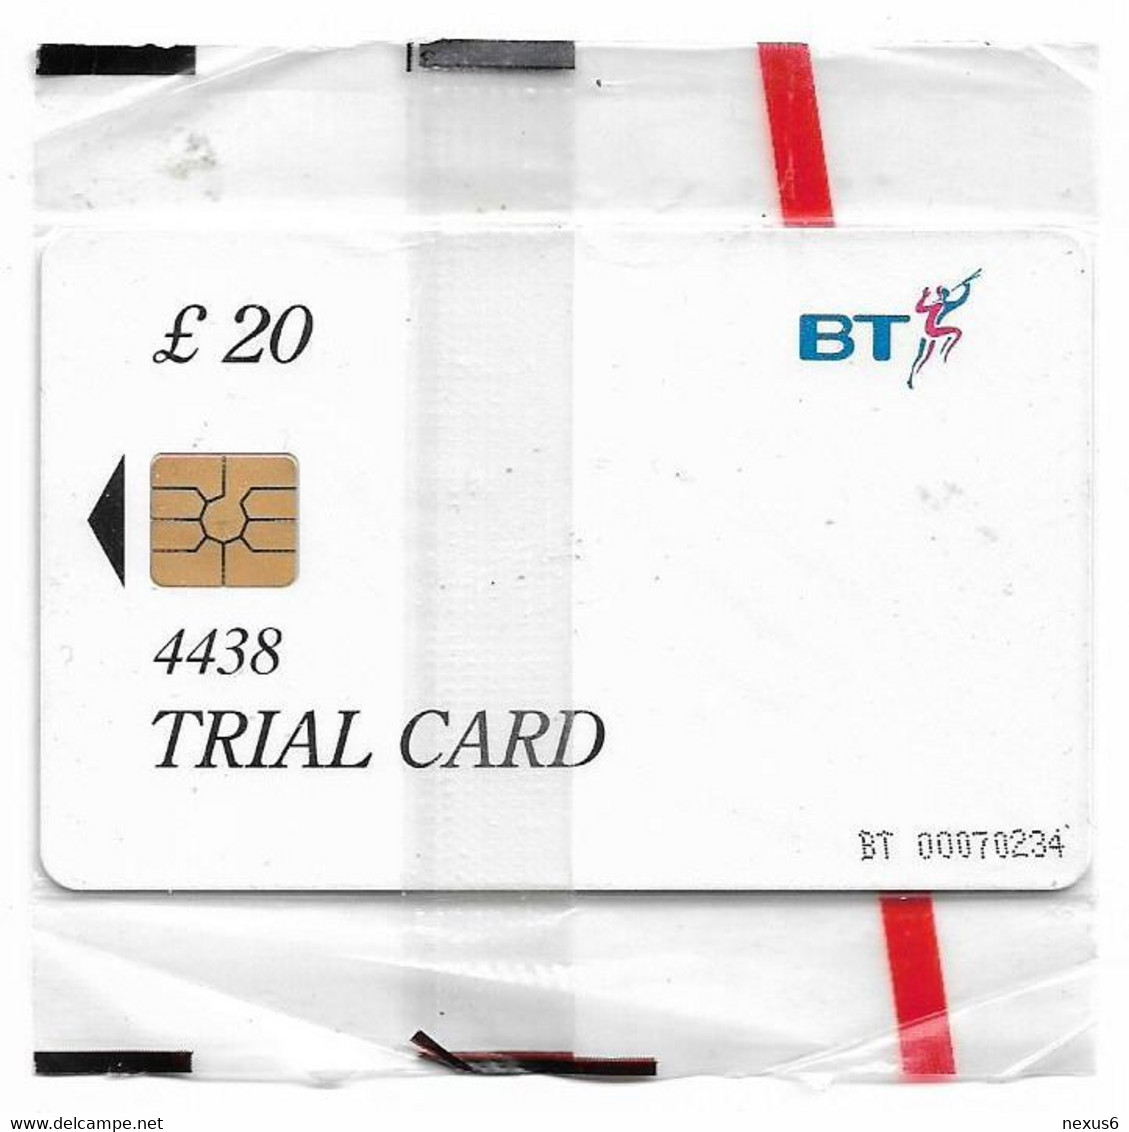 UK - BT - BCF - Rose Trial Card 20£, TRL016b (No Date, Written 4438, Big Gemplus), 1.000ex, NSB - BT Dienst Und Test